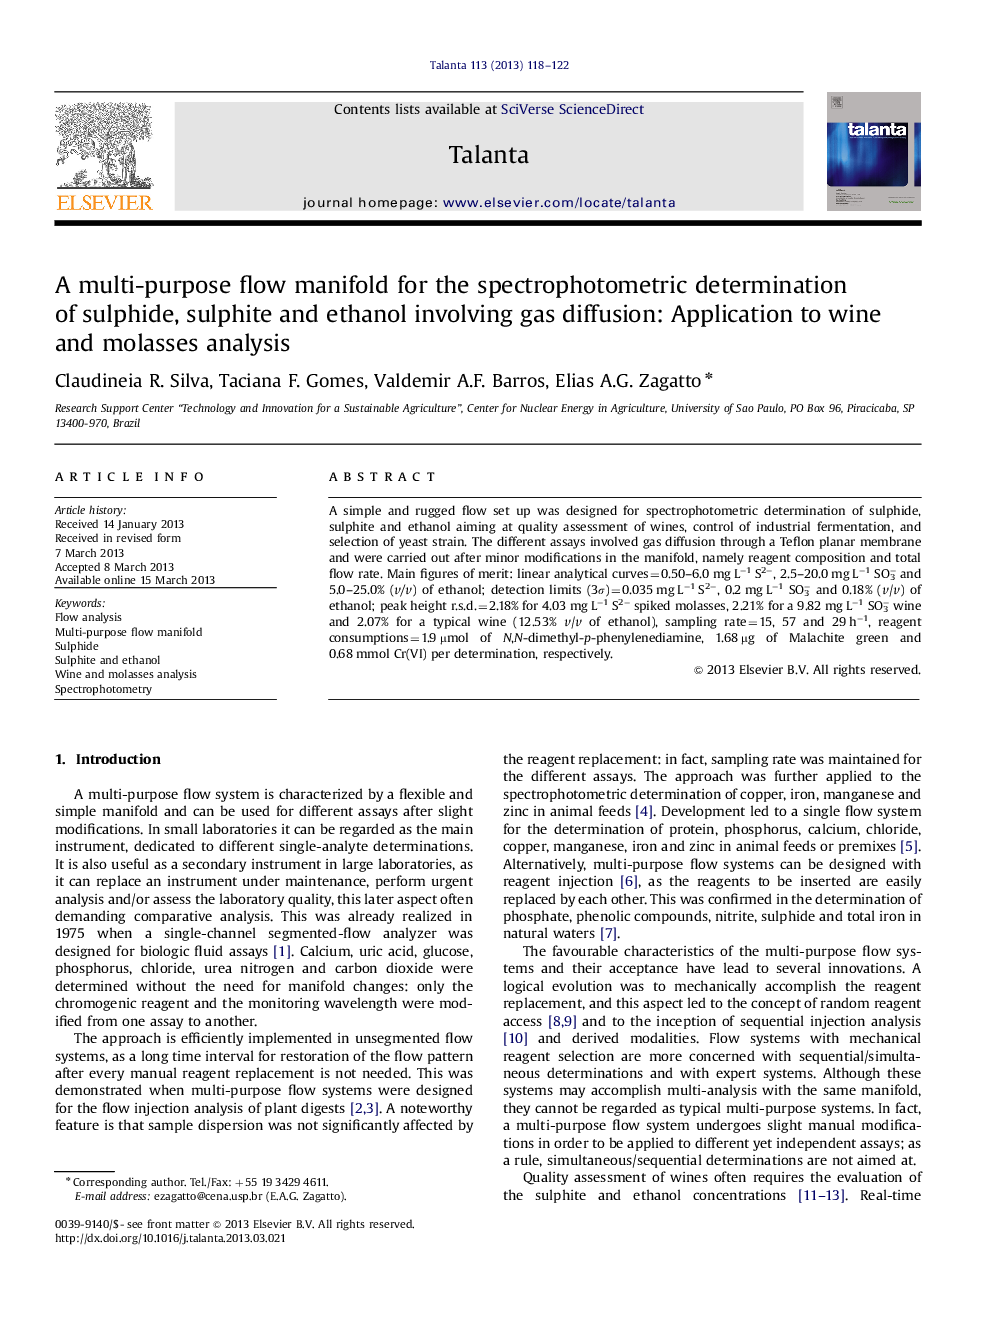 یک منیفولد جریان چند منظوره برای تعیین اسپکتروفتومتری سولفید، سولفیت و اتانول شامل انتشار گاز: کاربرد آن در تجزیه و تحلیل شراب و ملاس 